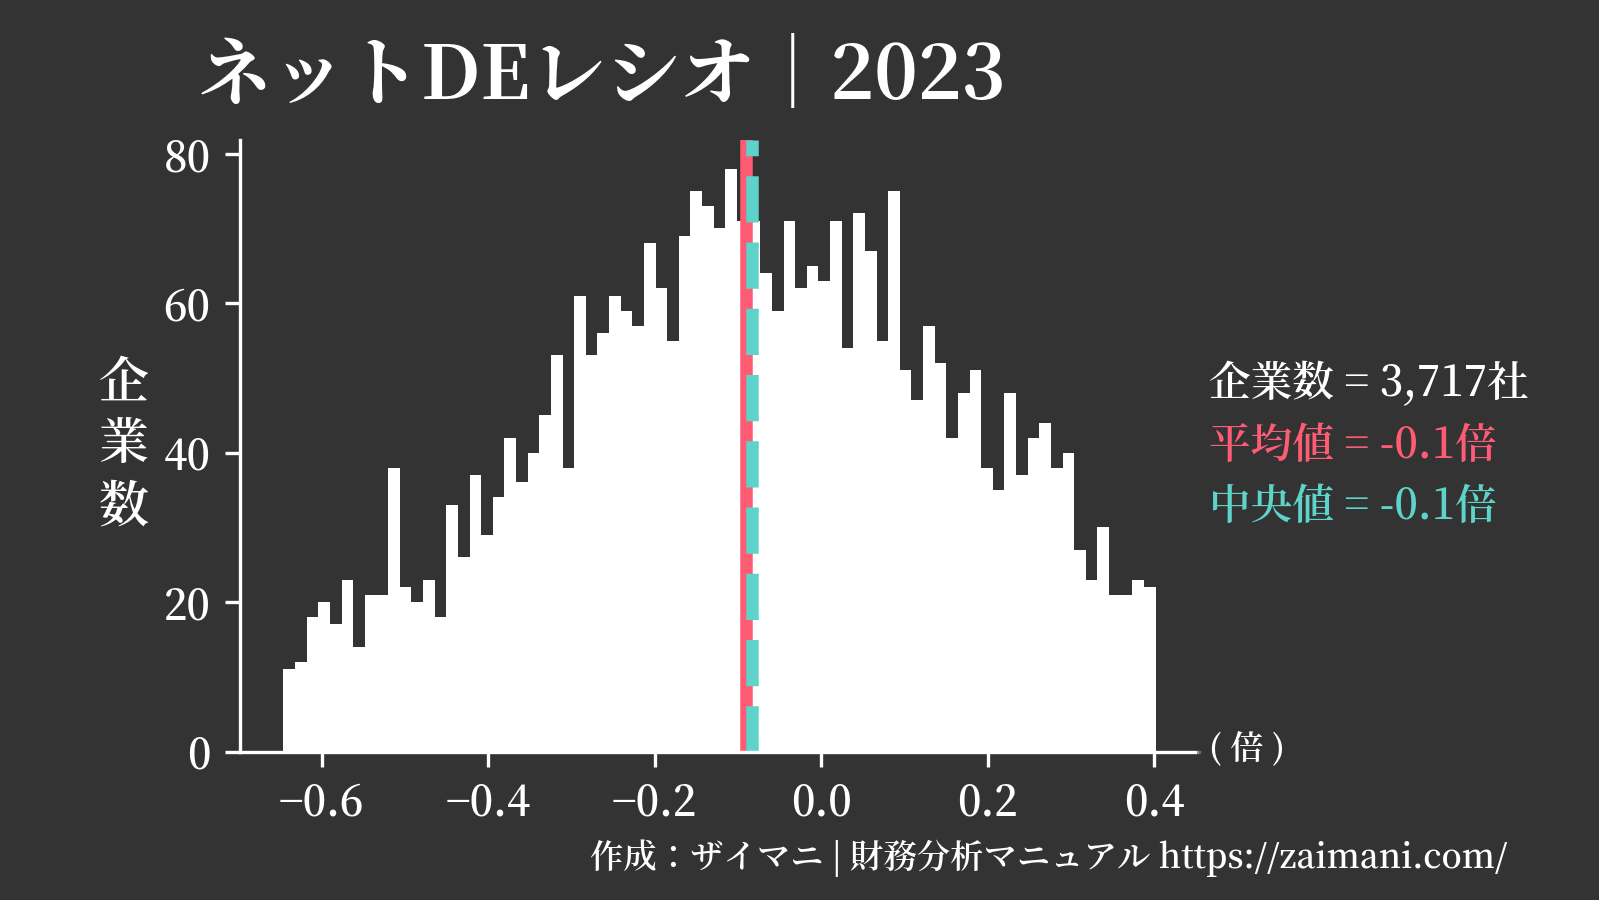 ネットDEレシオ(2023)の全業種平均・中央値